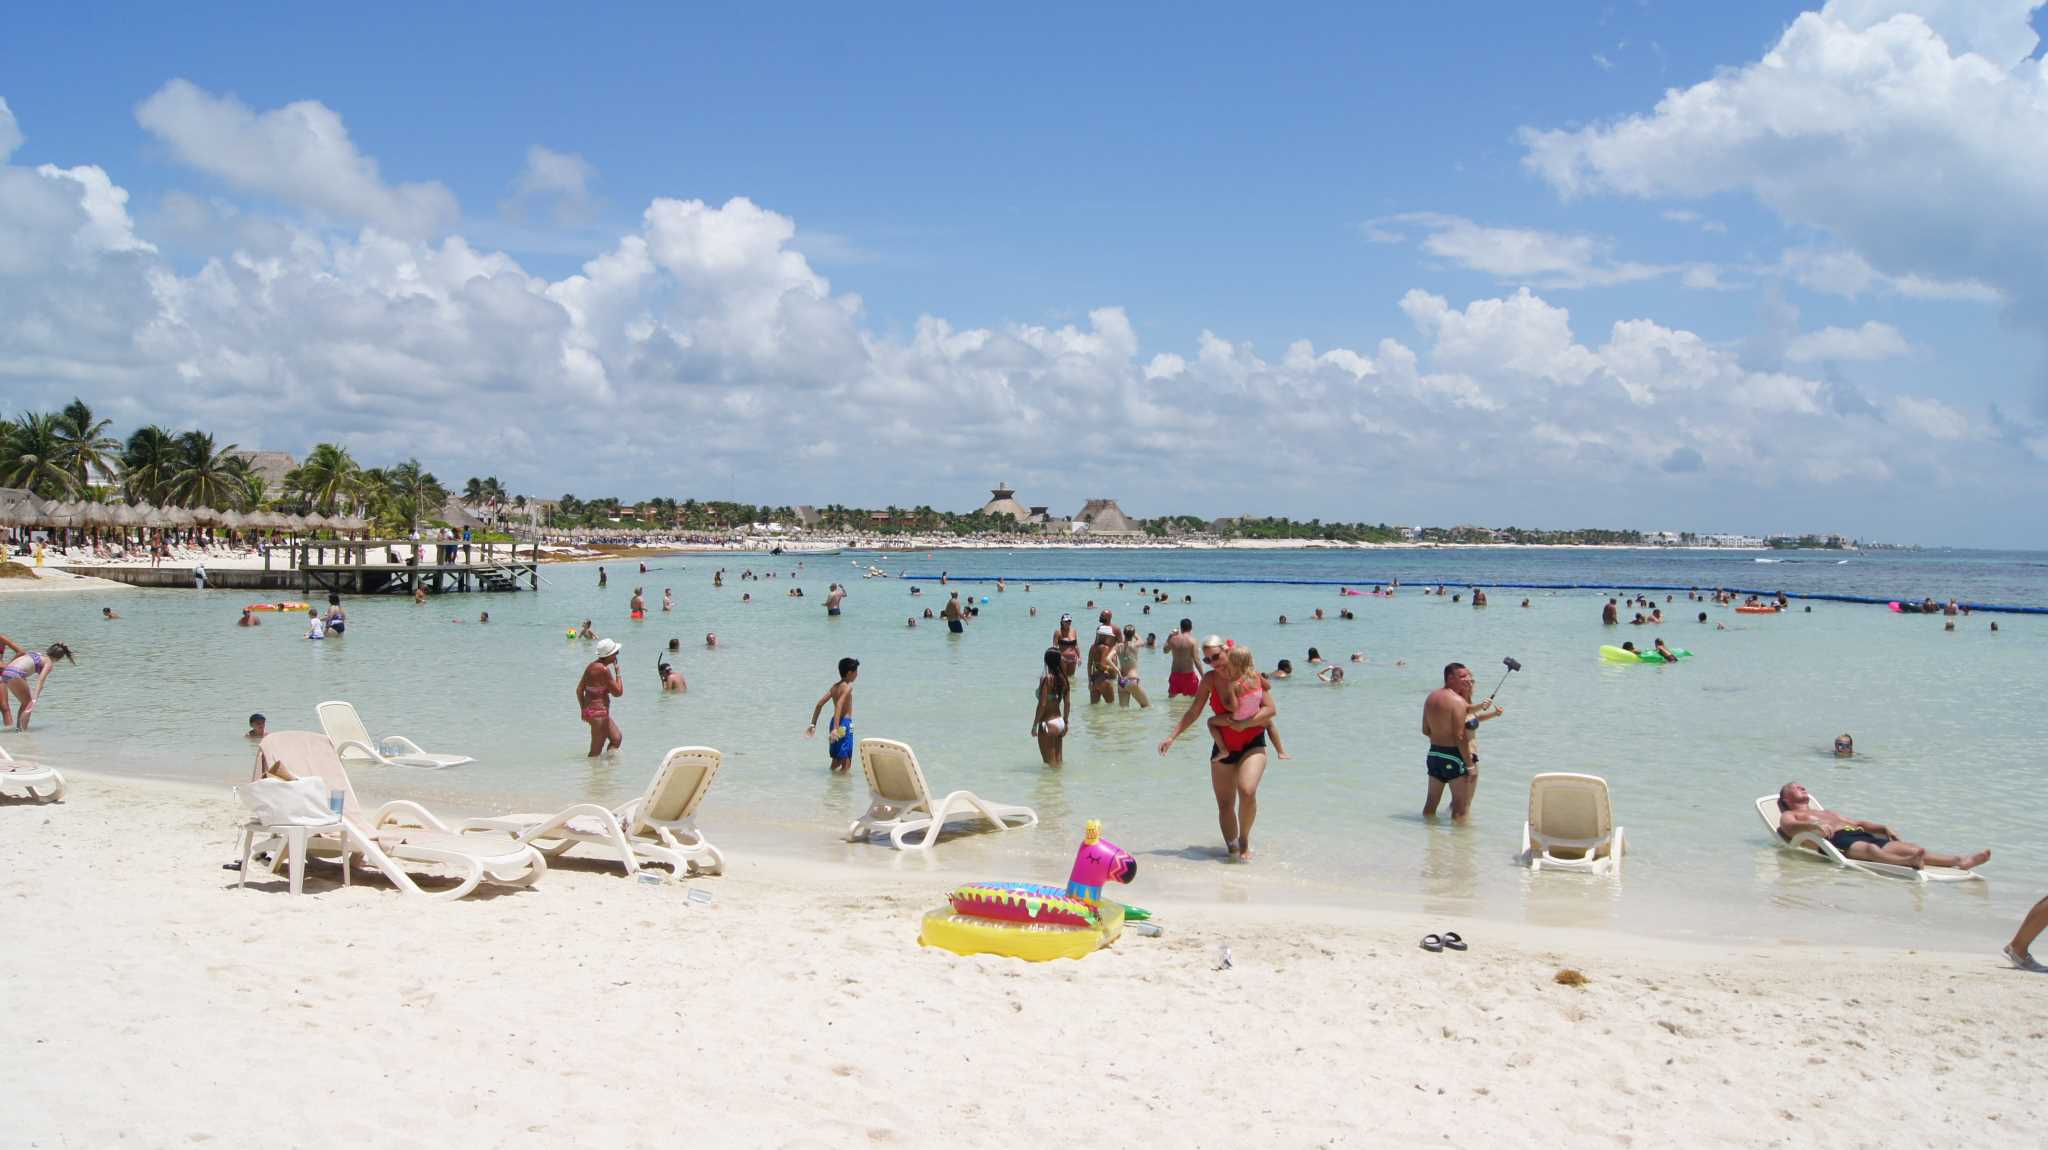 Переполненные пляжи Канкуна, где ступить некуда (Bahia Principe - crowded beach)